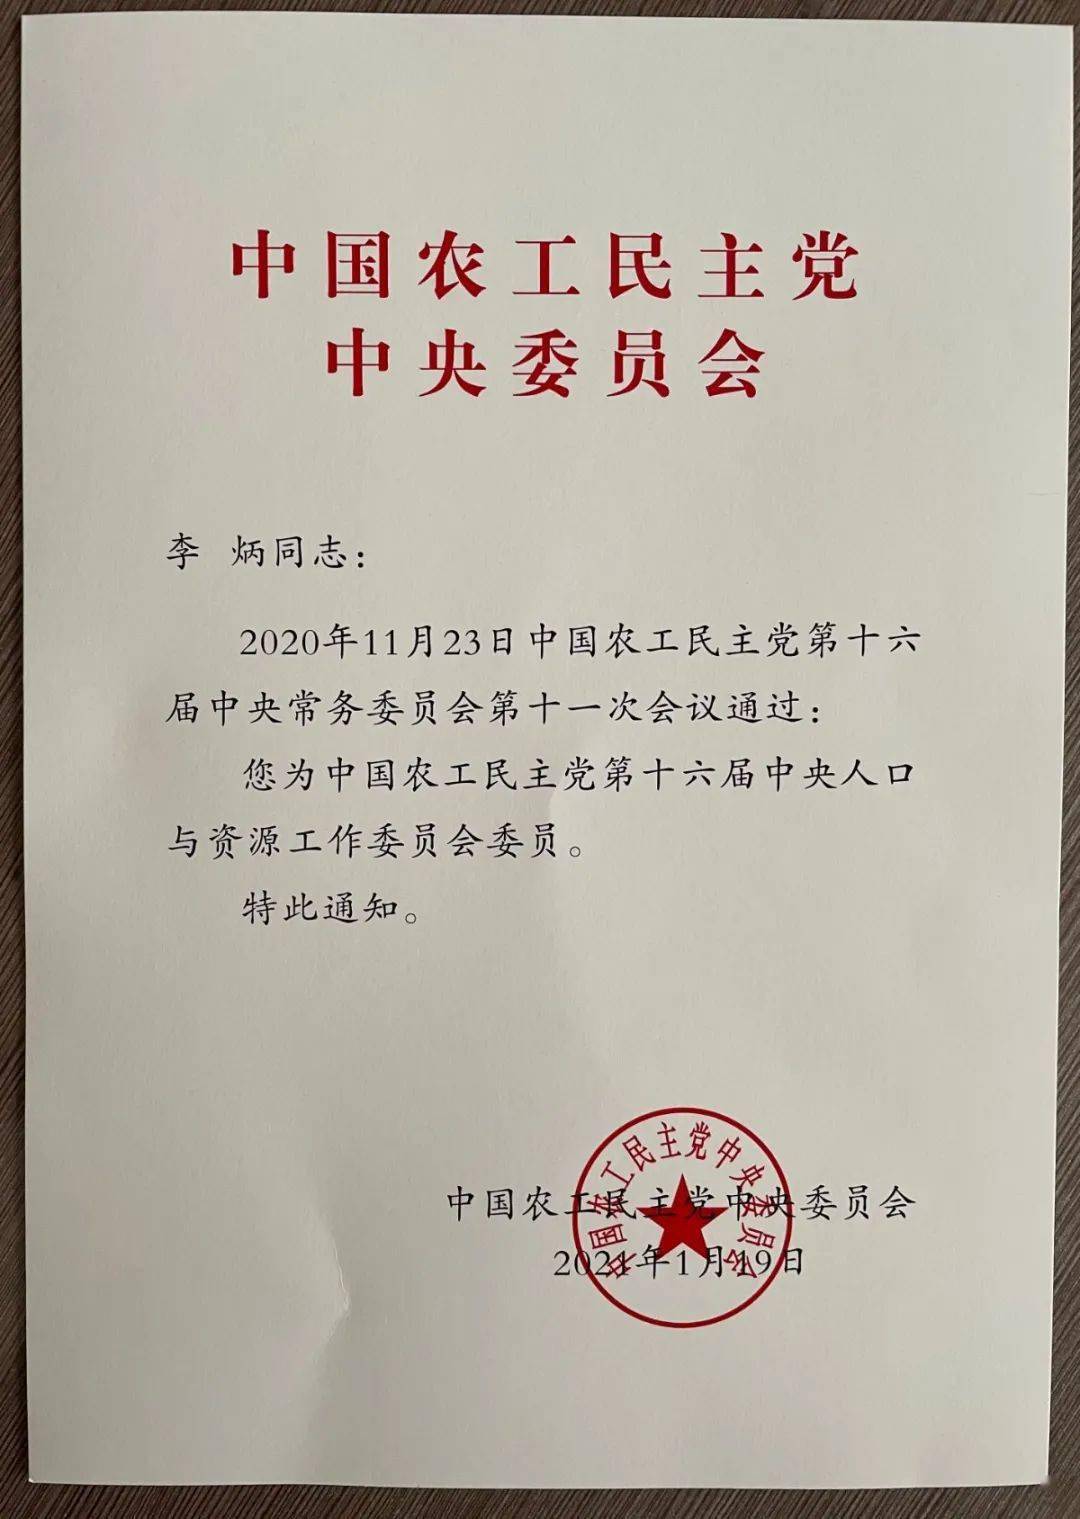 【喜讯】我院李炳被聘为中国农工民主党第十六届中央人口与资源工作